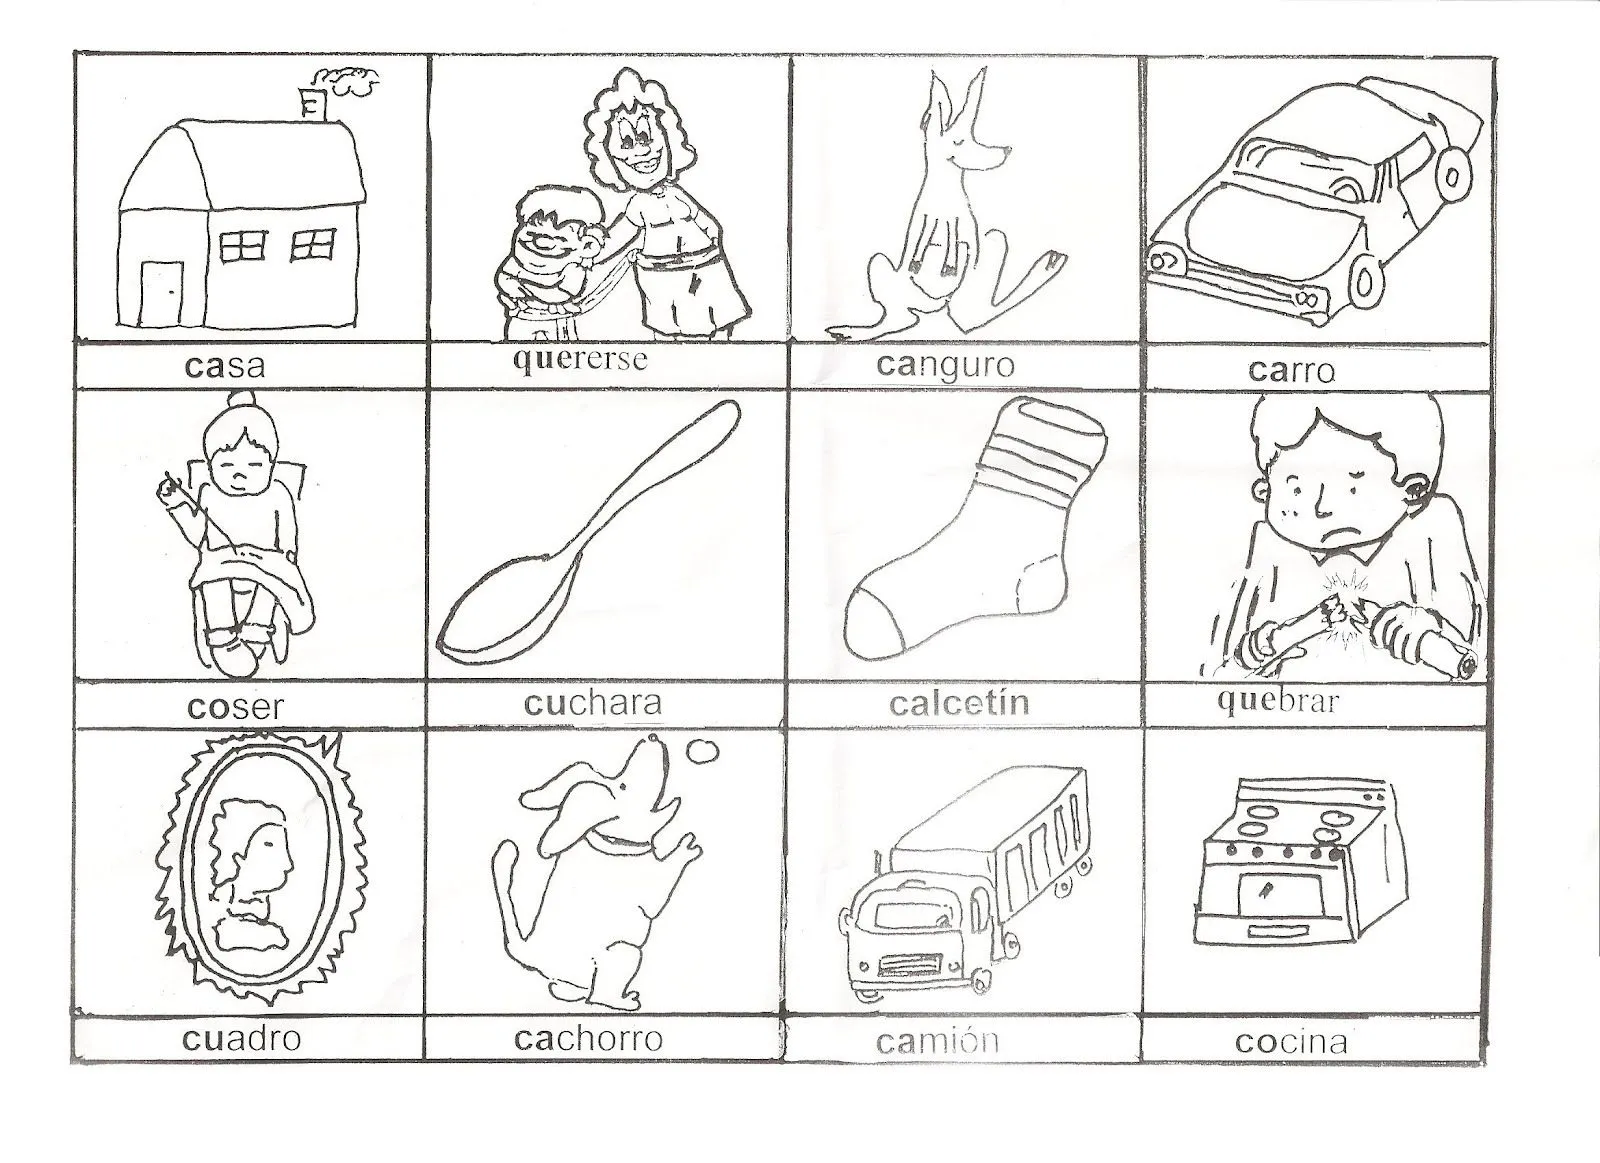 Láminas de ortografía: letras y sonidos distintos | Mi Kinder